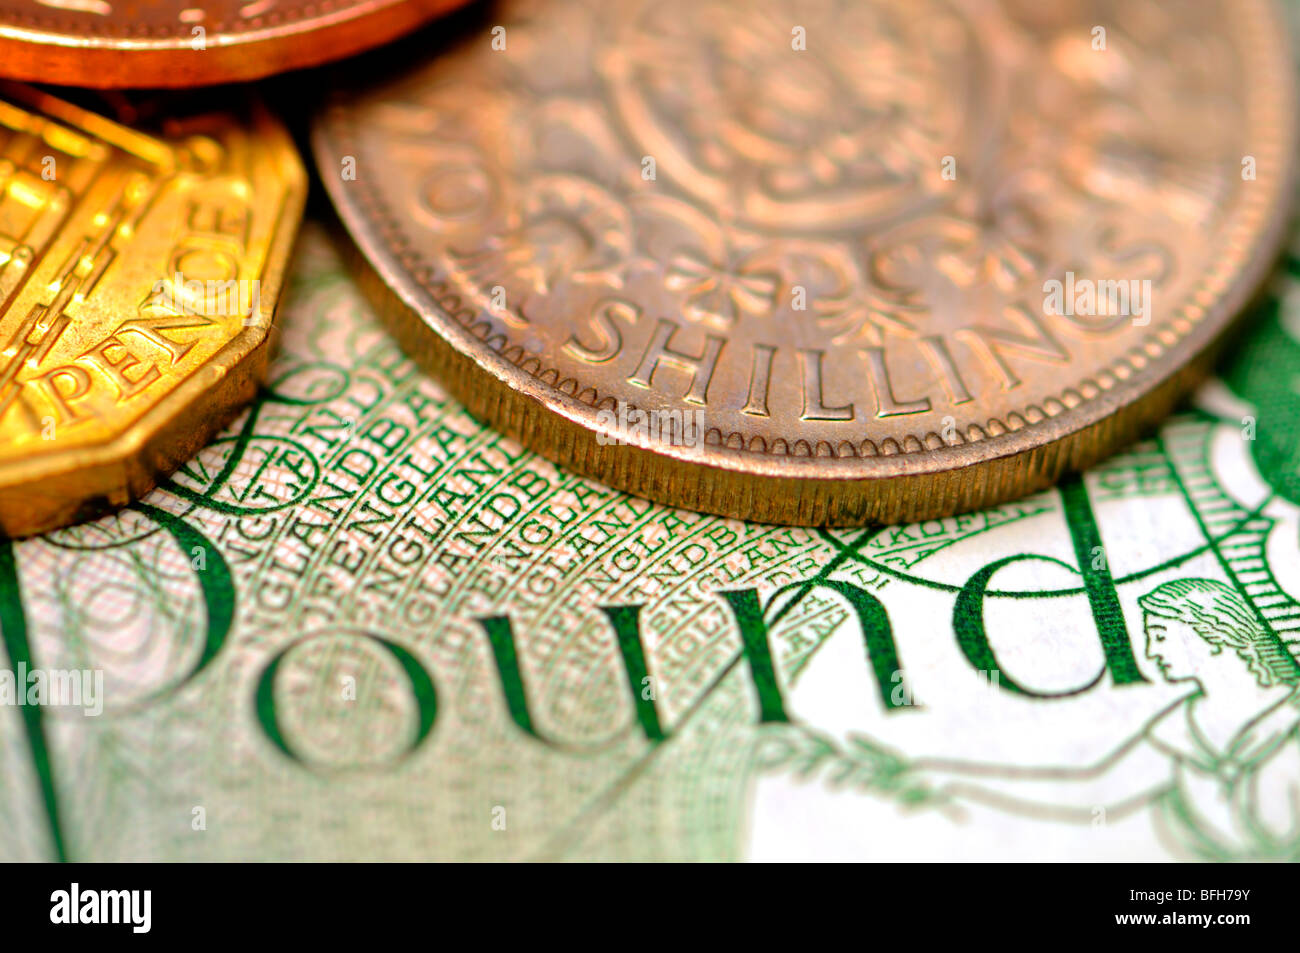 Pre-decimale valuta britannica: Scellino due,tre pence e mezzo centesimo su Pound nota Foto Stock